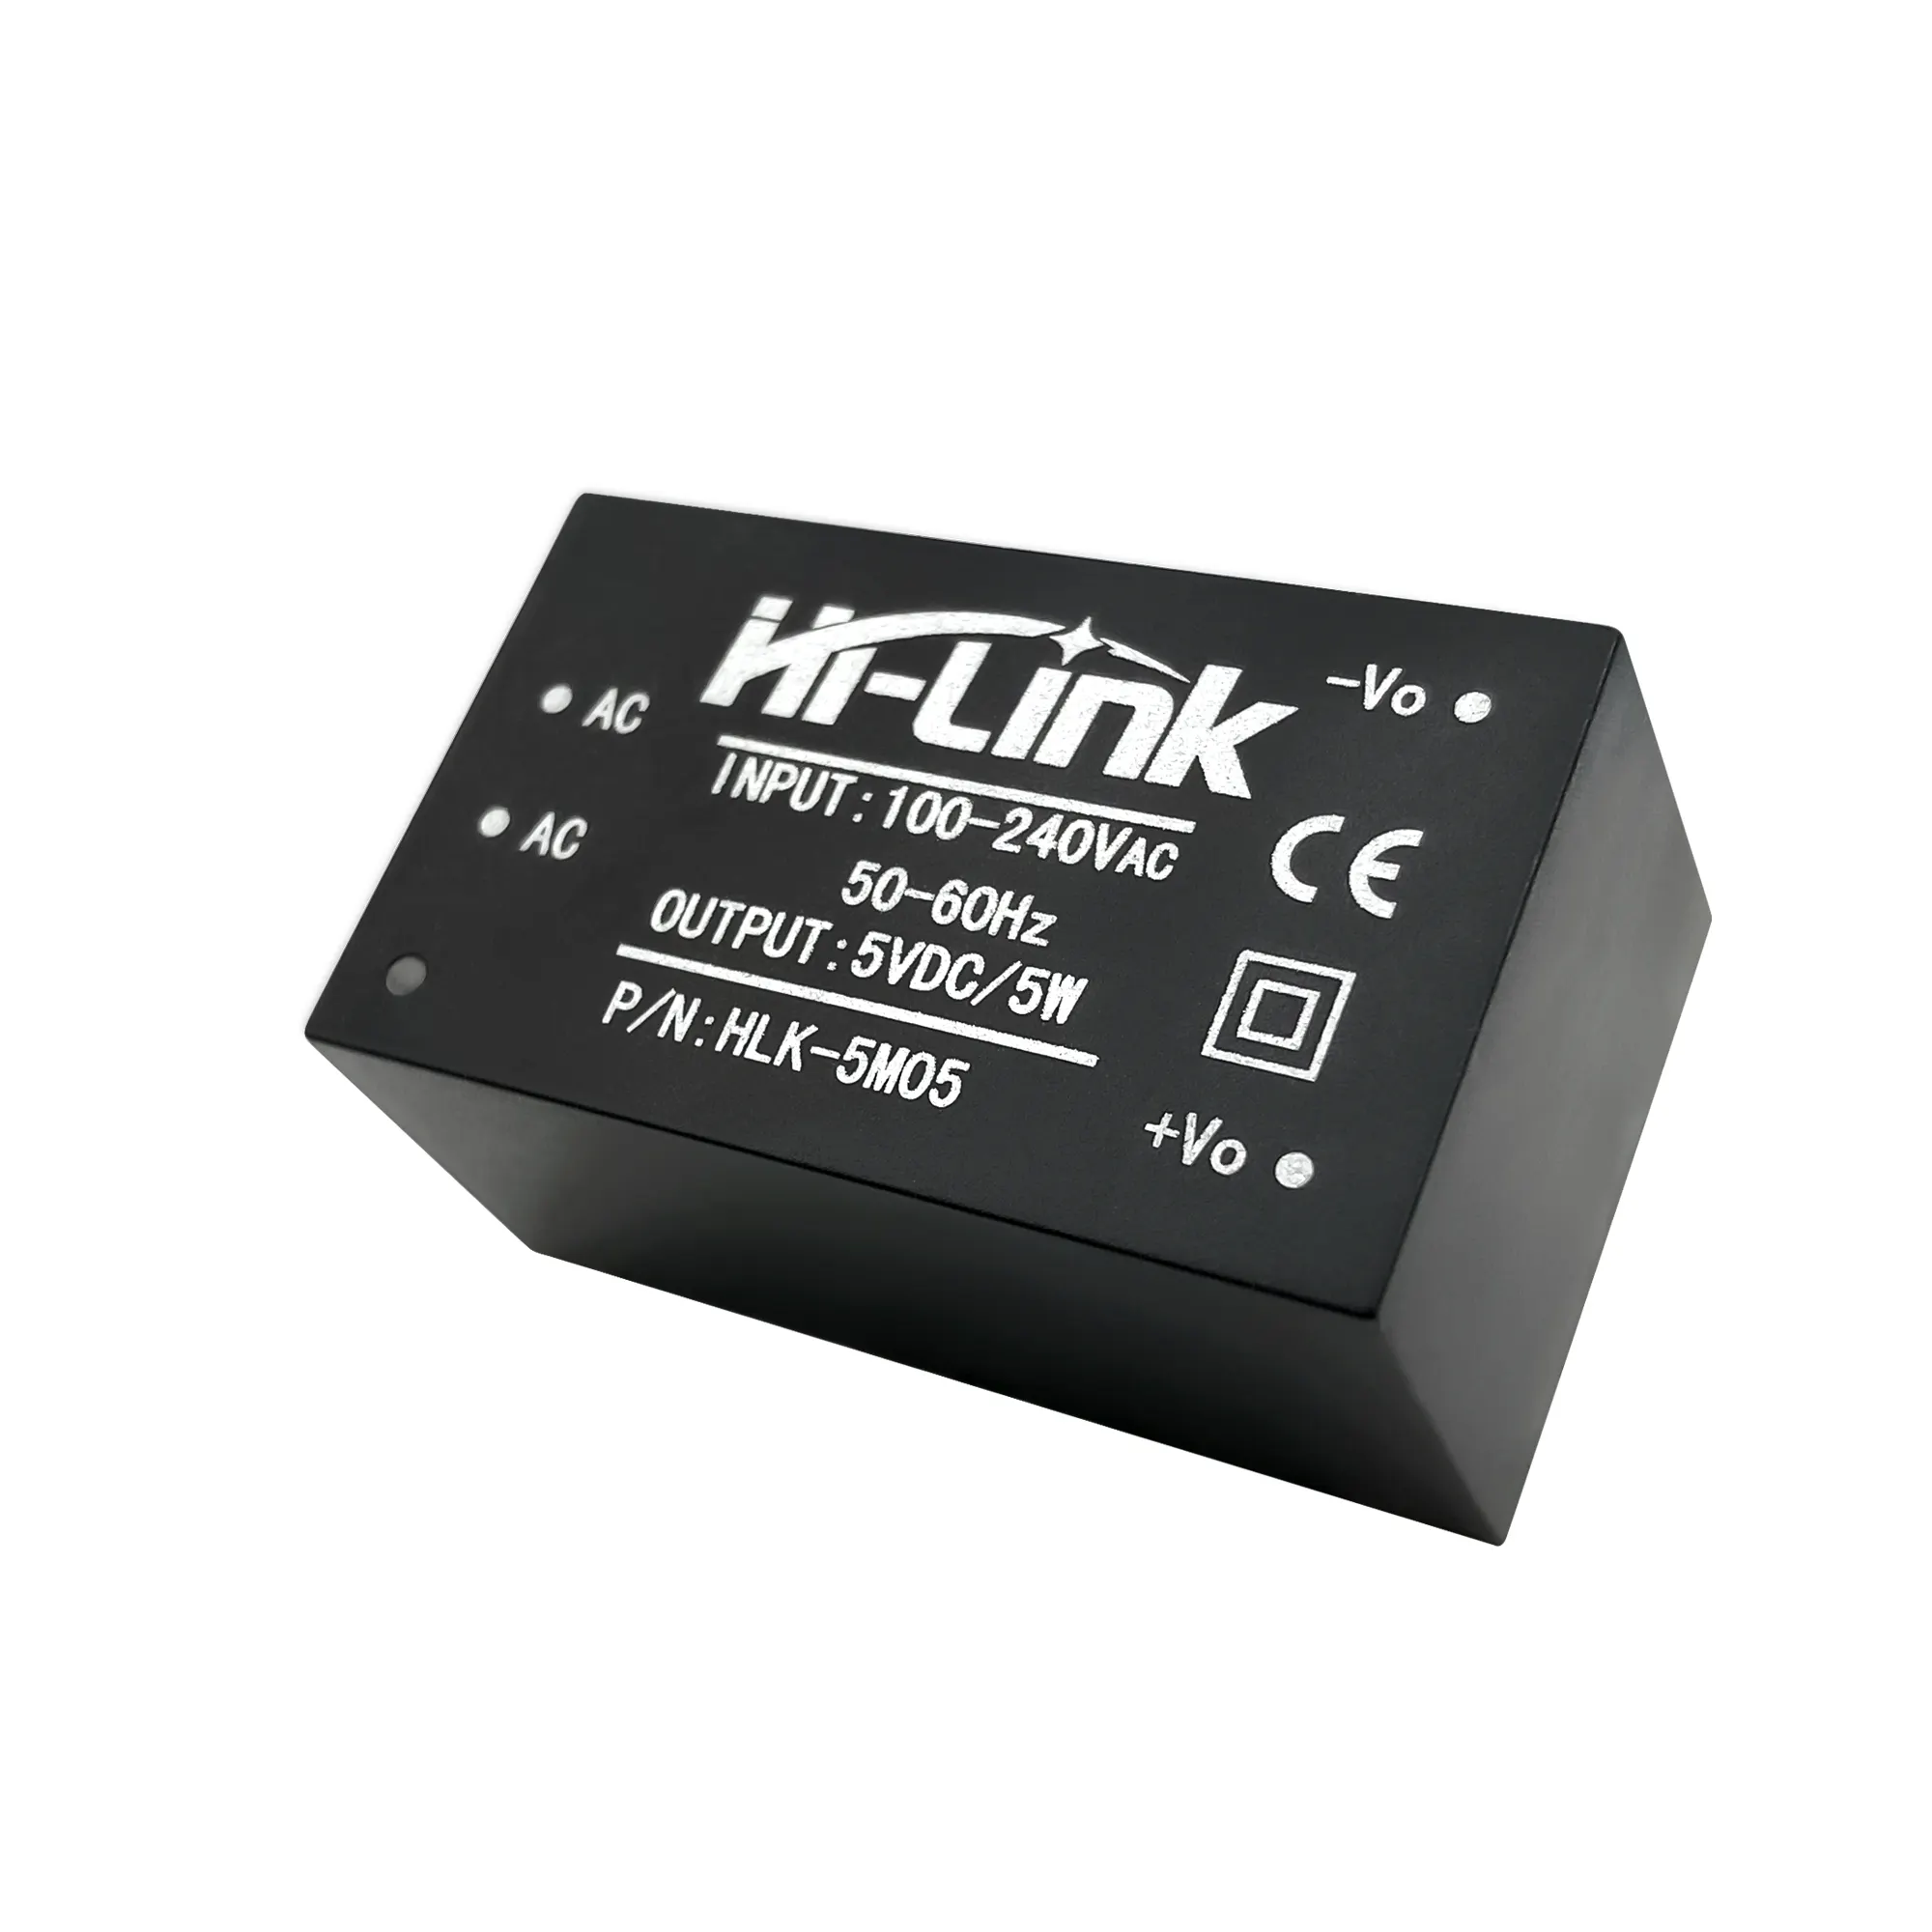 Módulo de alimentação interruptor doméstico inteligente 220V a 5V 5W AC DC módulo conversor Baixa ondulação HLK-5M05 Mini AC DC fonte de alimentação